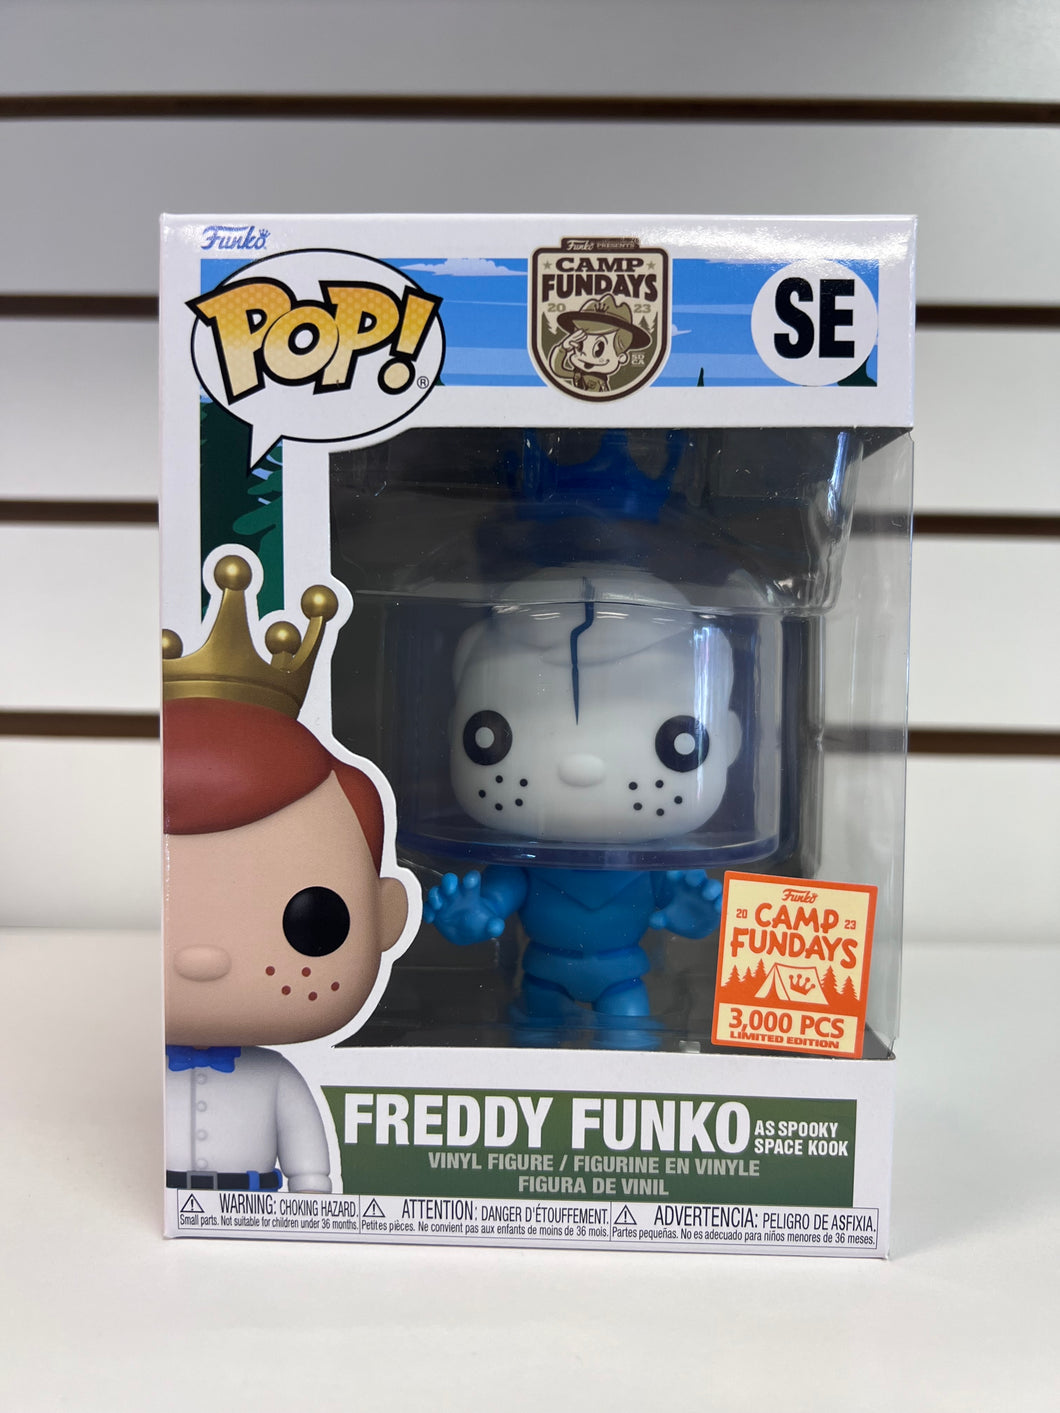 Funko Pop Freddy Funko as Spooky Space Kook